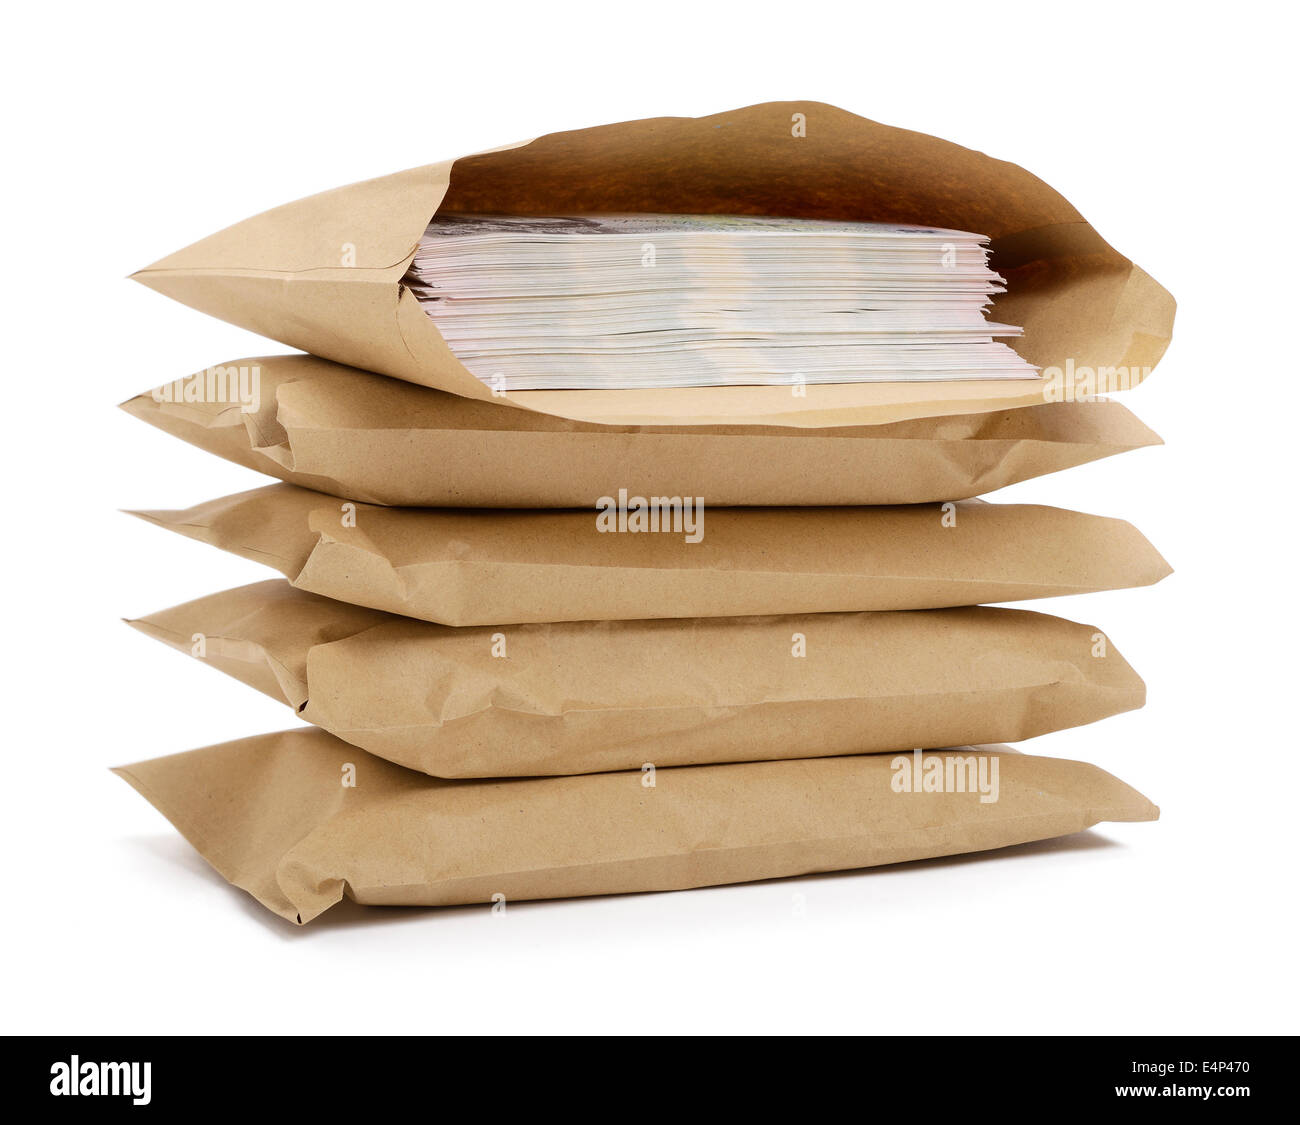 Brown envelopes full of money Stock Photo